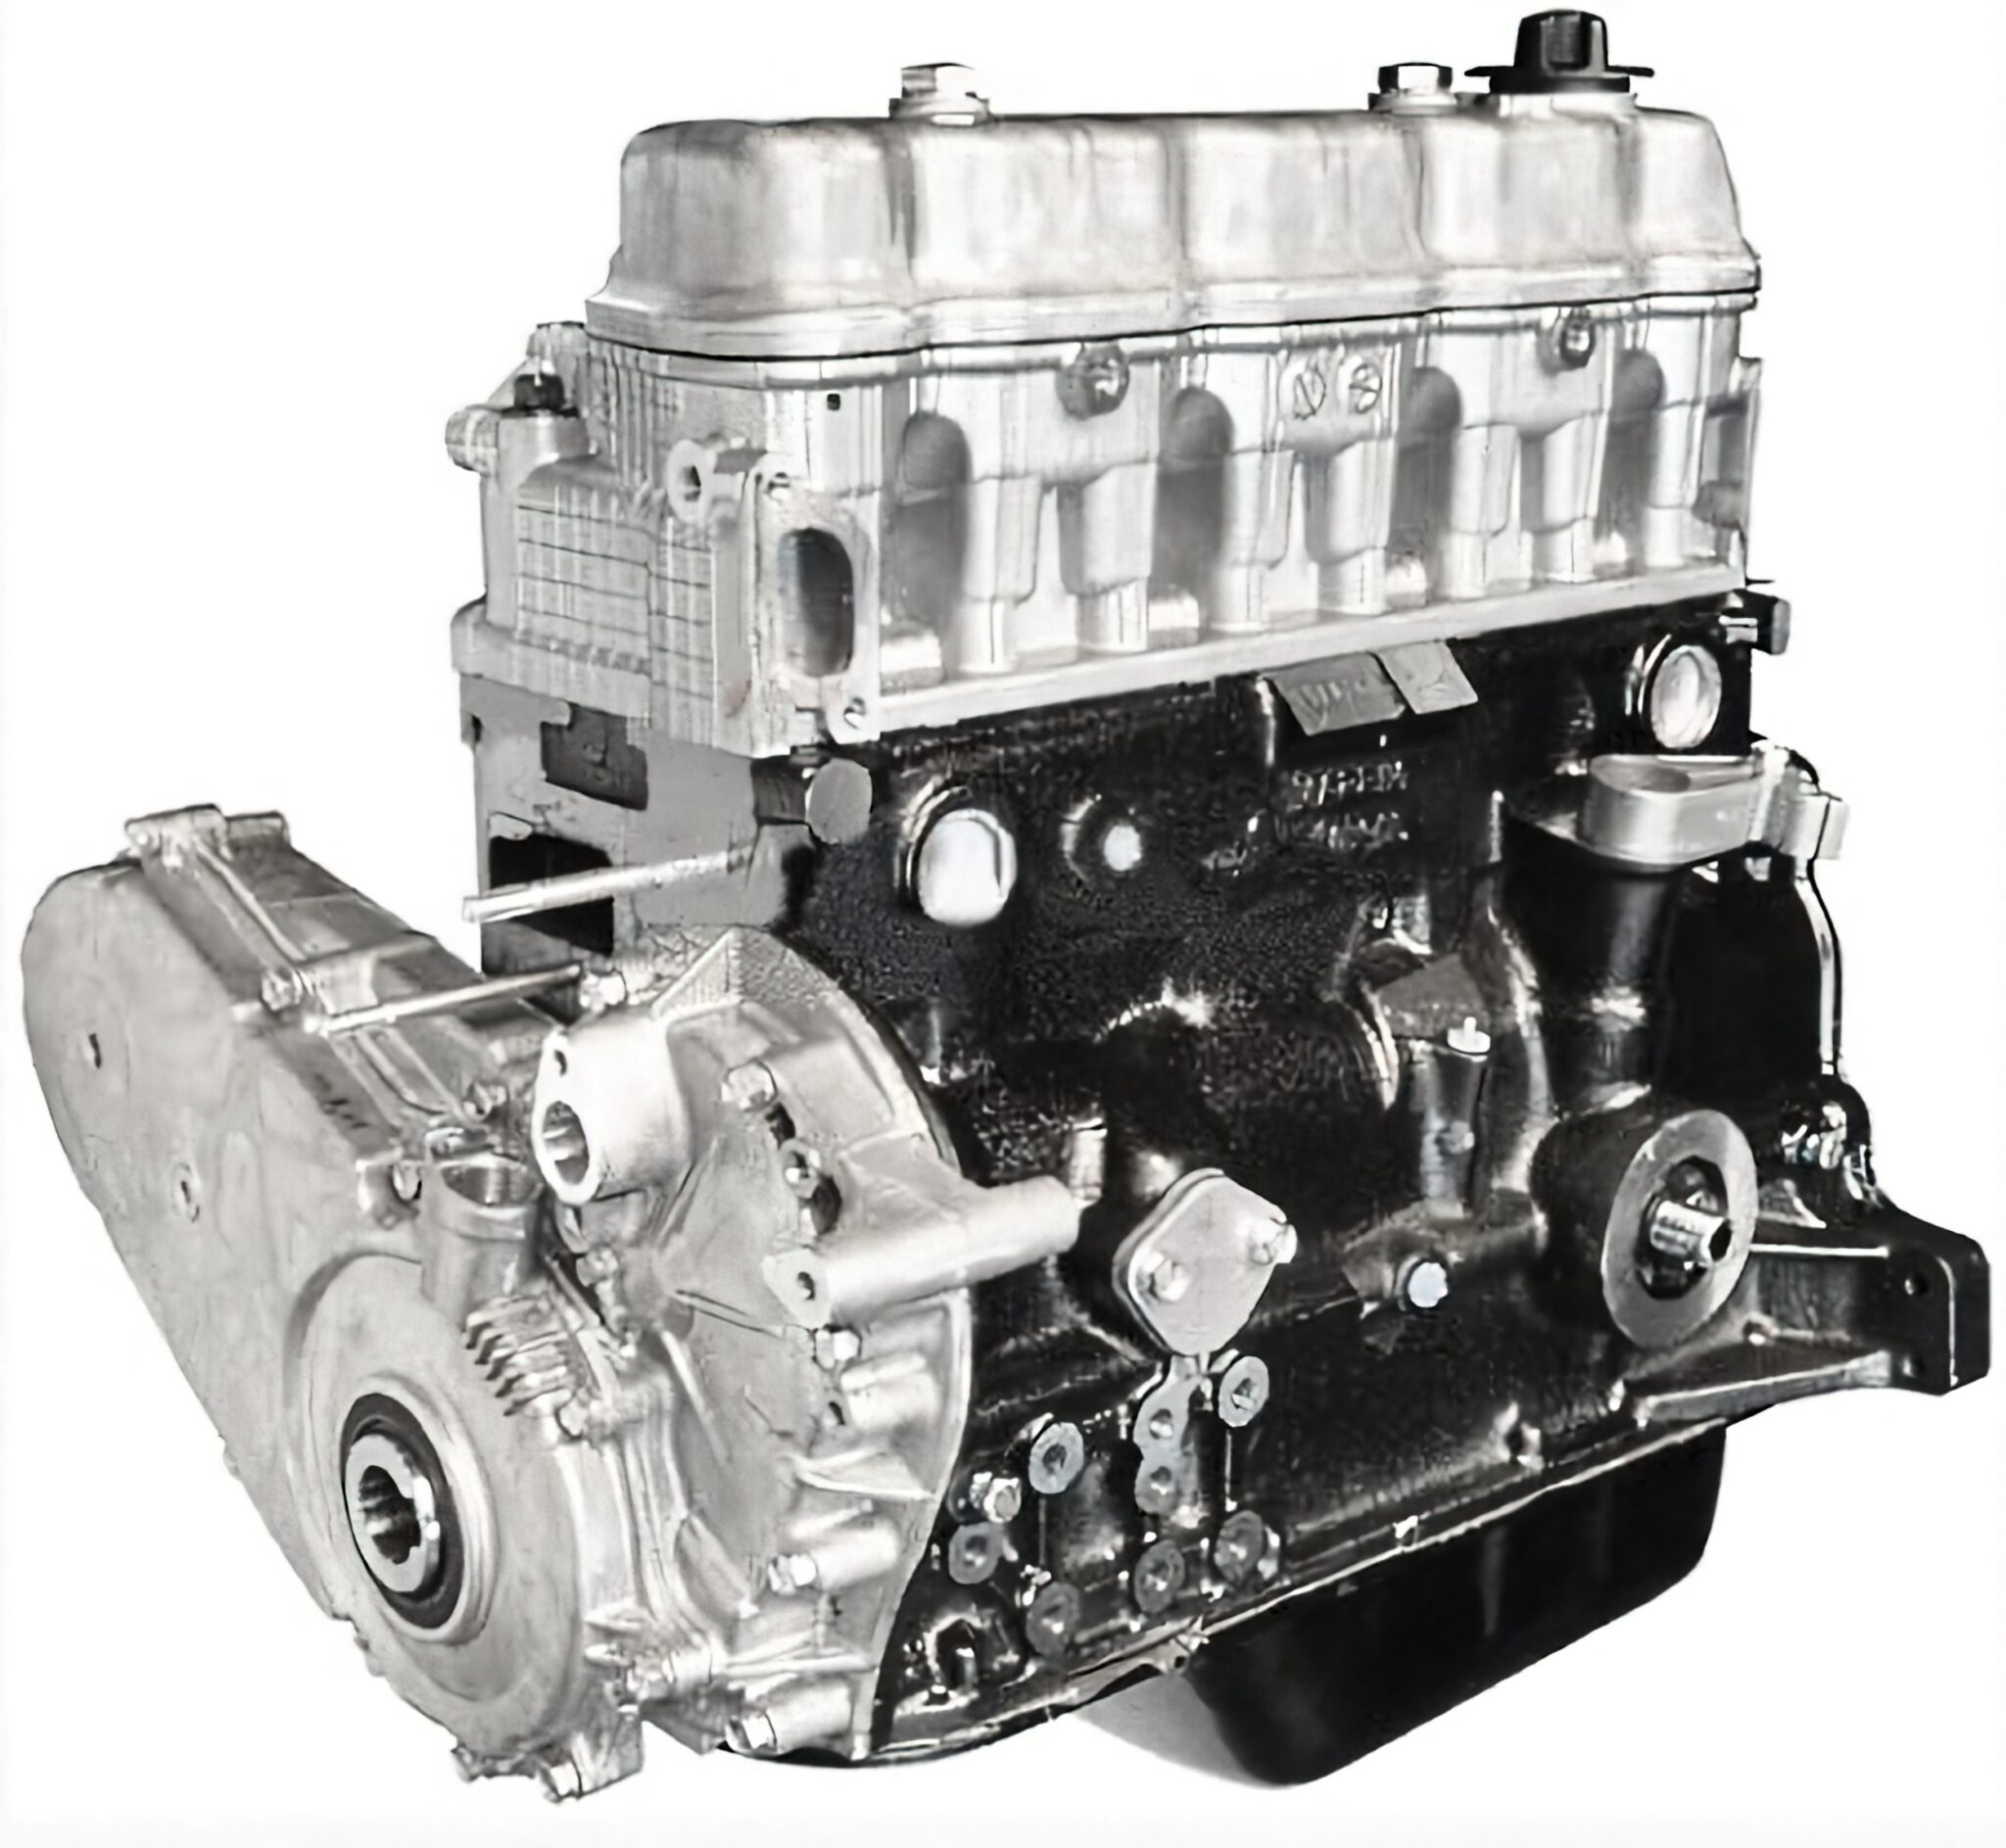 Nissan k21. Nissan k15 двигатель. Двигатель k21 Nissan погрузчик. Hyundai 25l-7sa. Двигатель к15 Ниссан автопогрузчик фильтра.